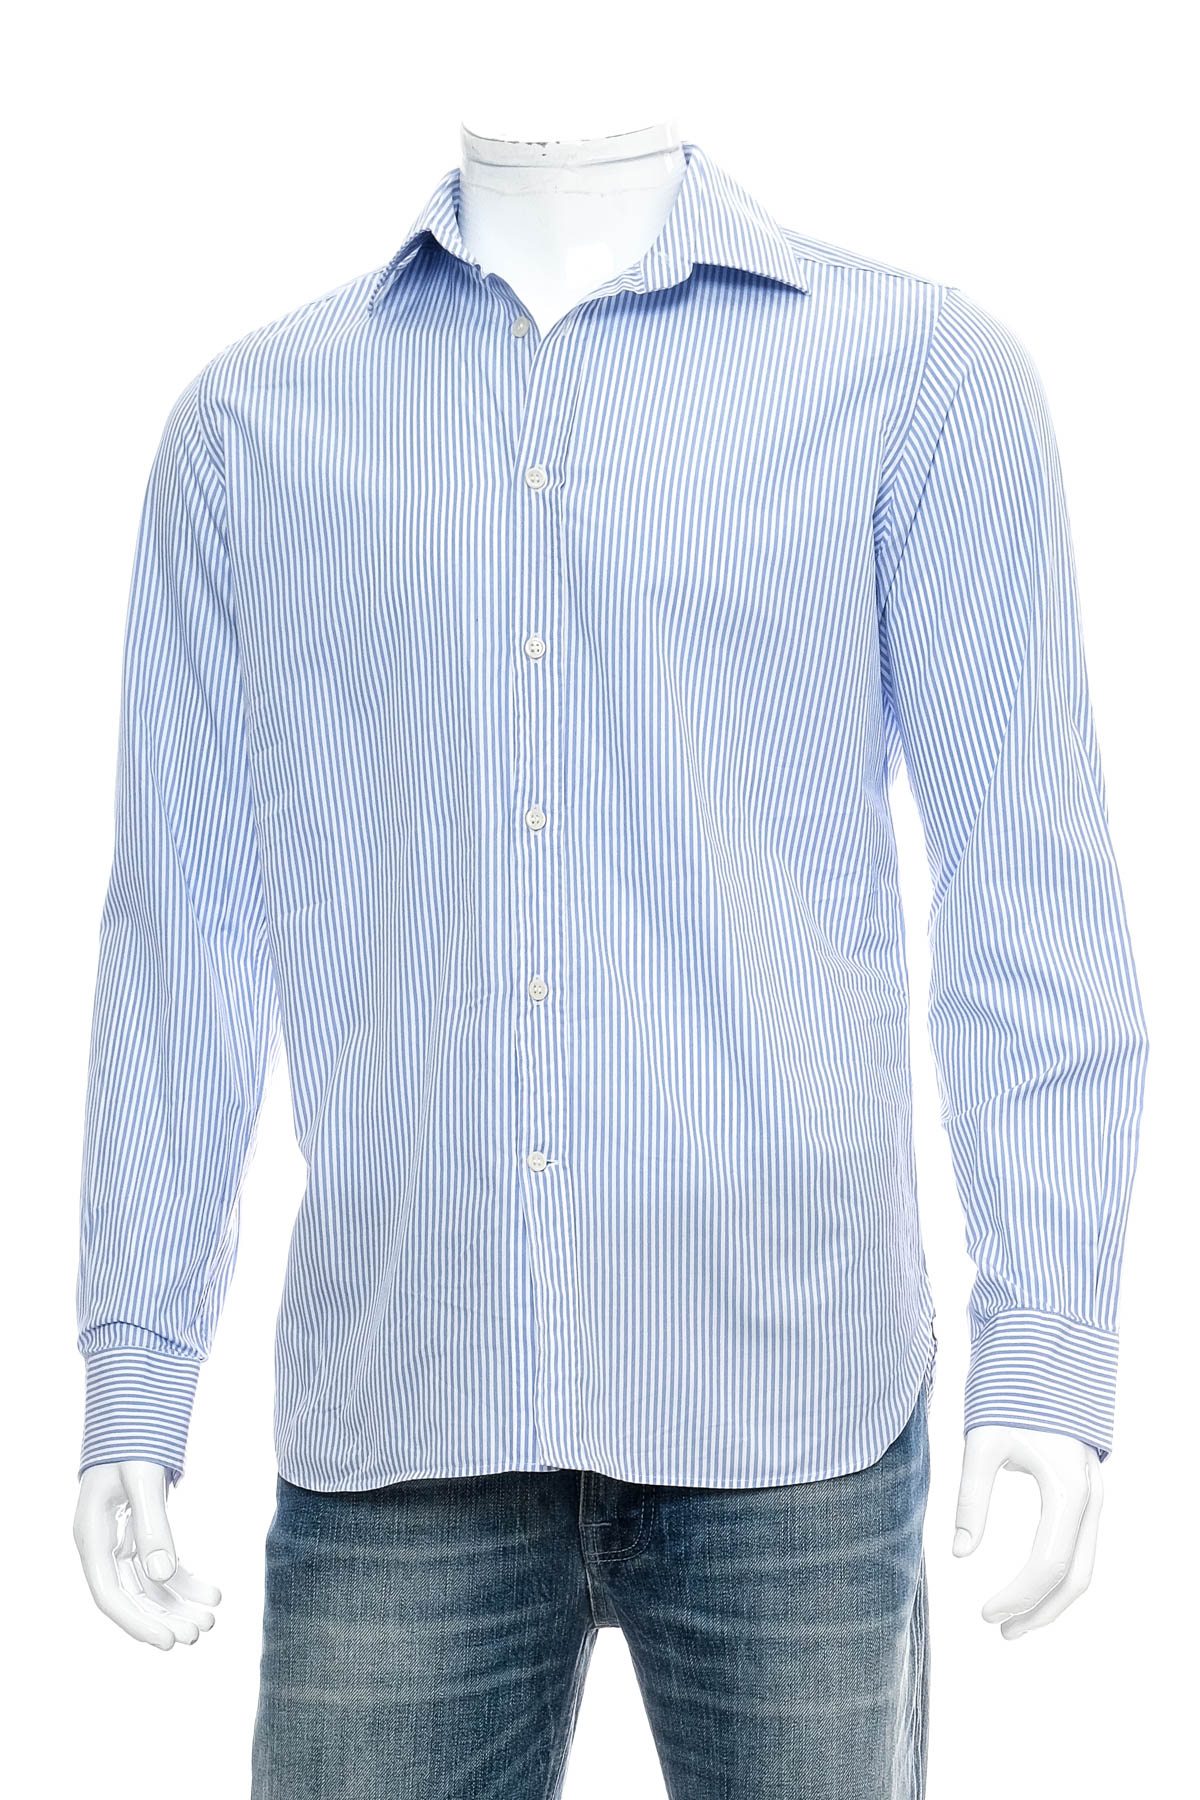 Ανδρικό πουκάμισο - Luca D'altieri - 0